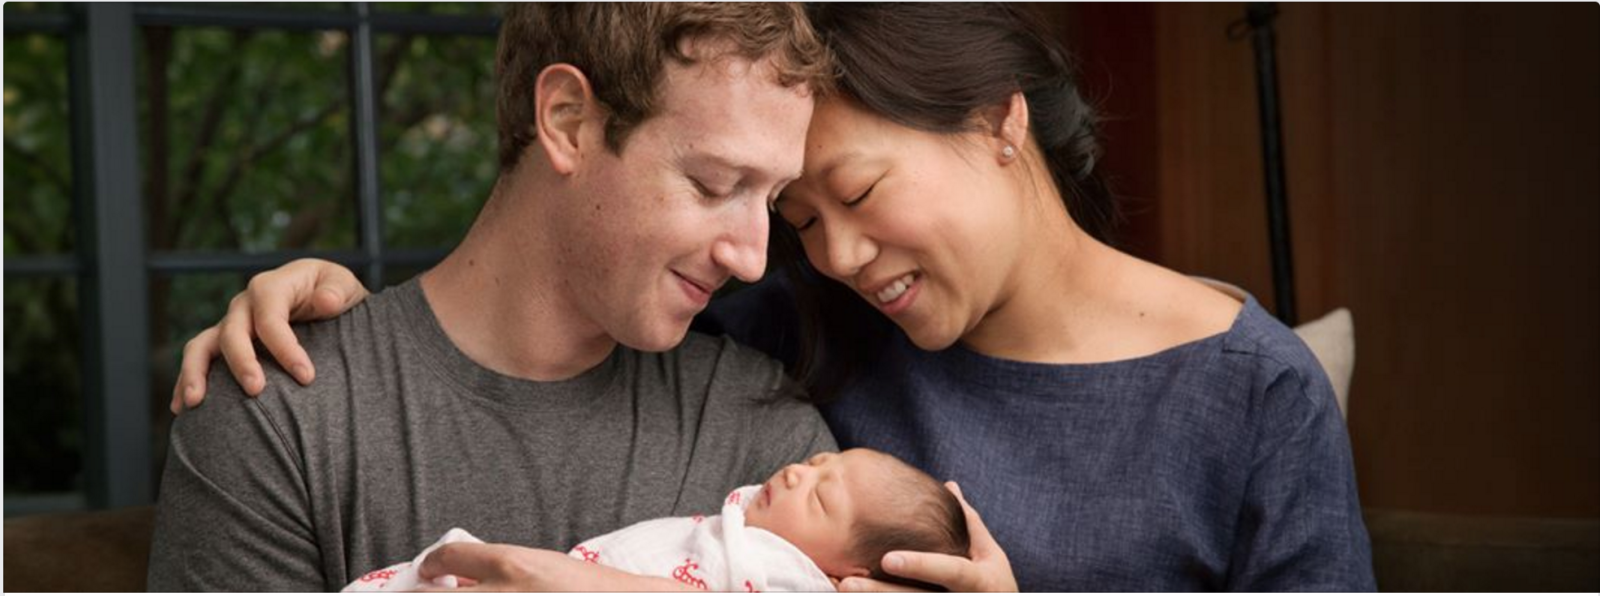 Mark Zuckerberg, Priscilla and Max